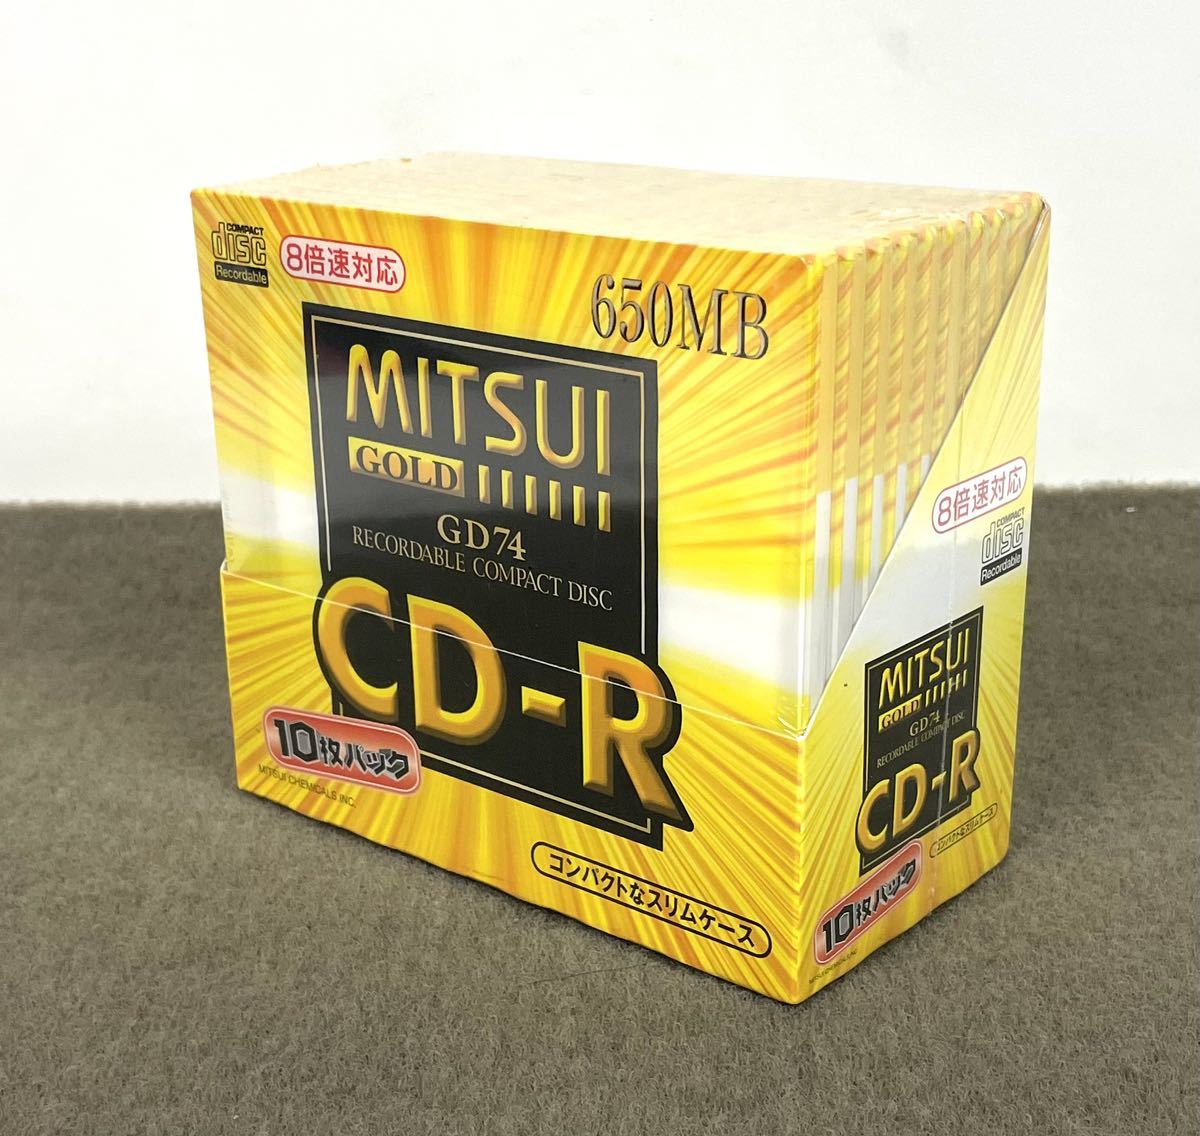 ヤフオク! -「mitsui gold cd-r」(コンピュータ) の落札相場・落札価格